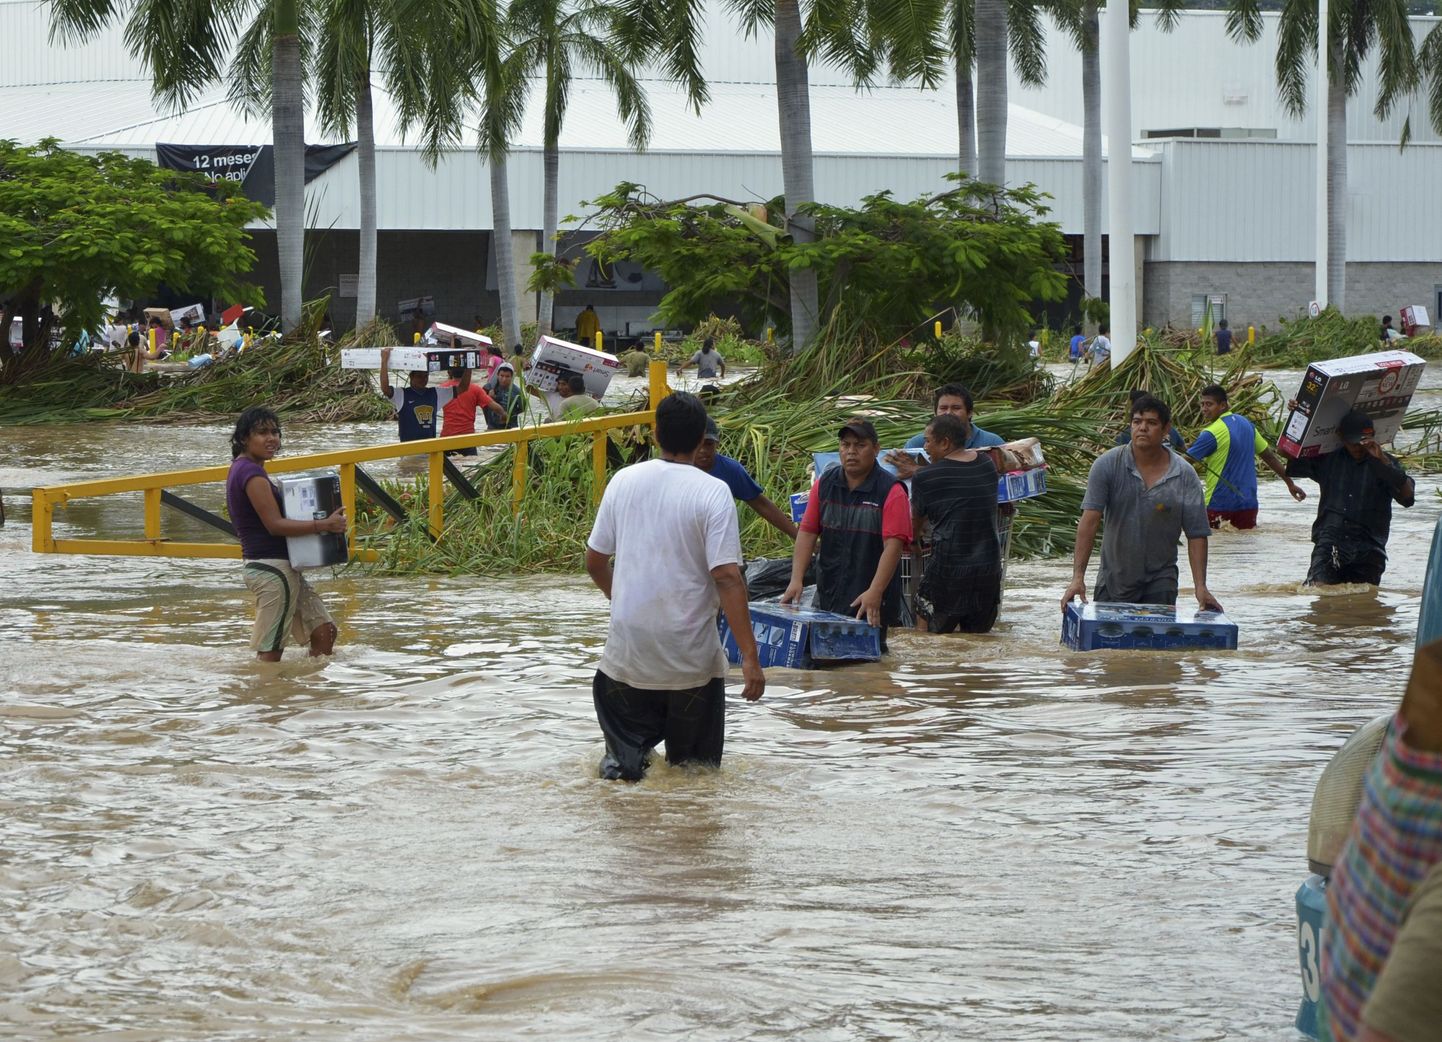 Inimesed kahlavad läbi suurvee, kandes käes Acapulco ühest kaubanduskeskusest ostetud kaupu.